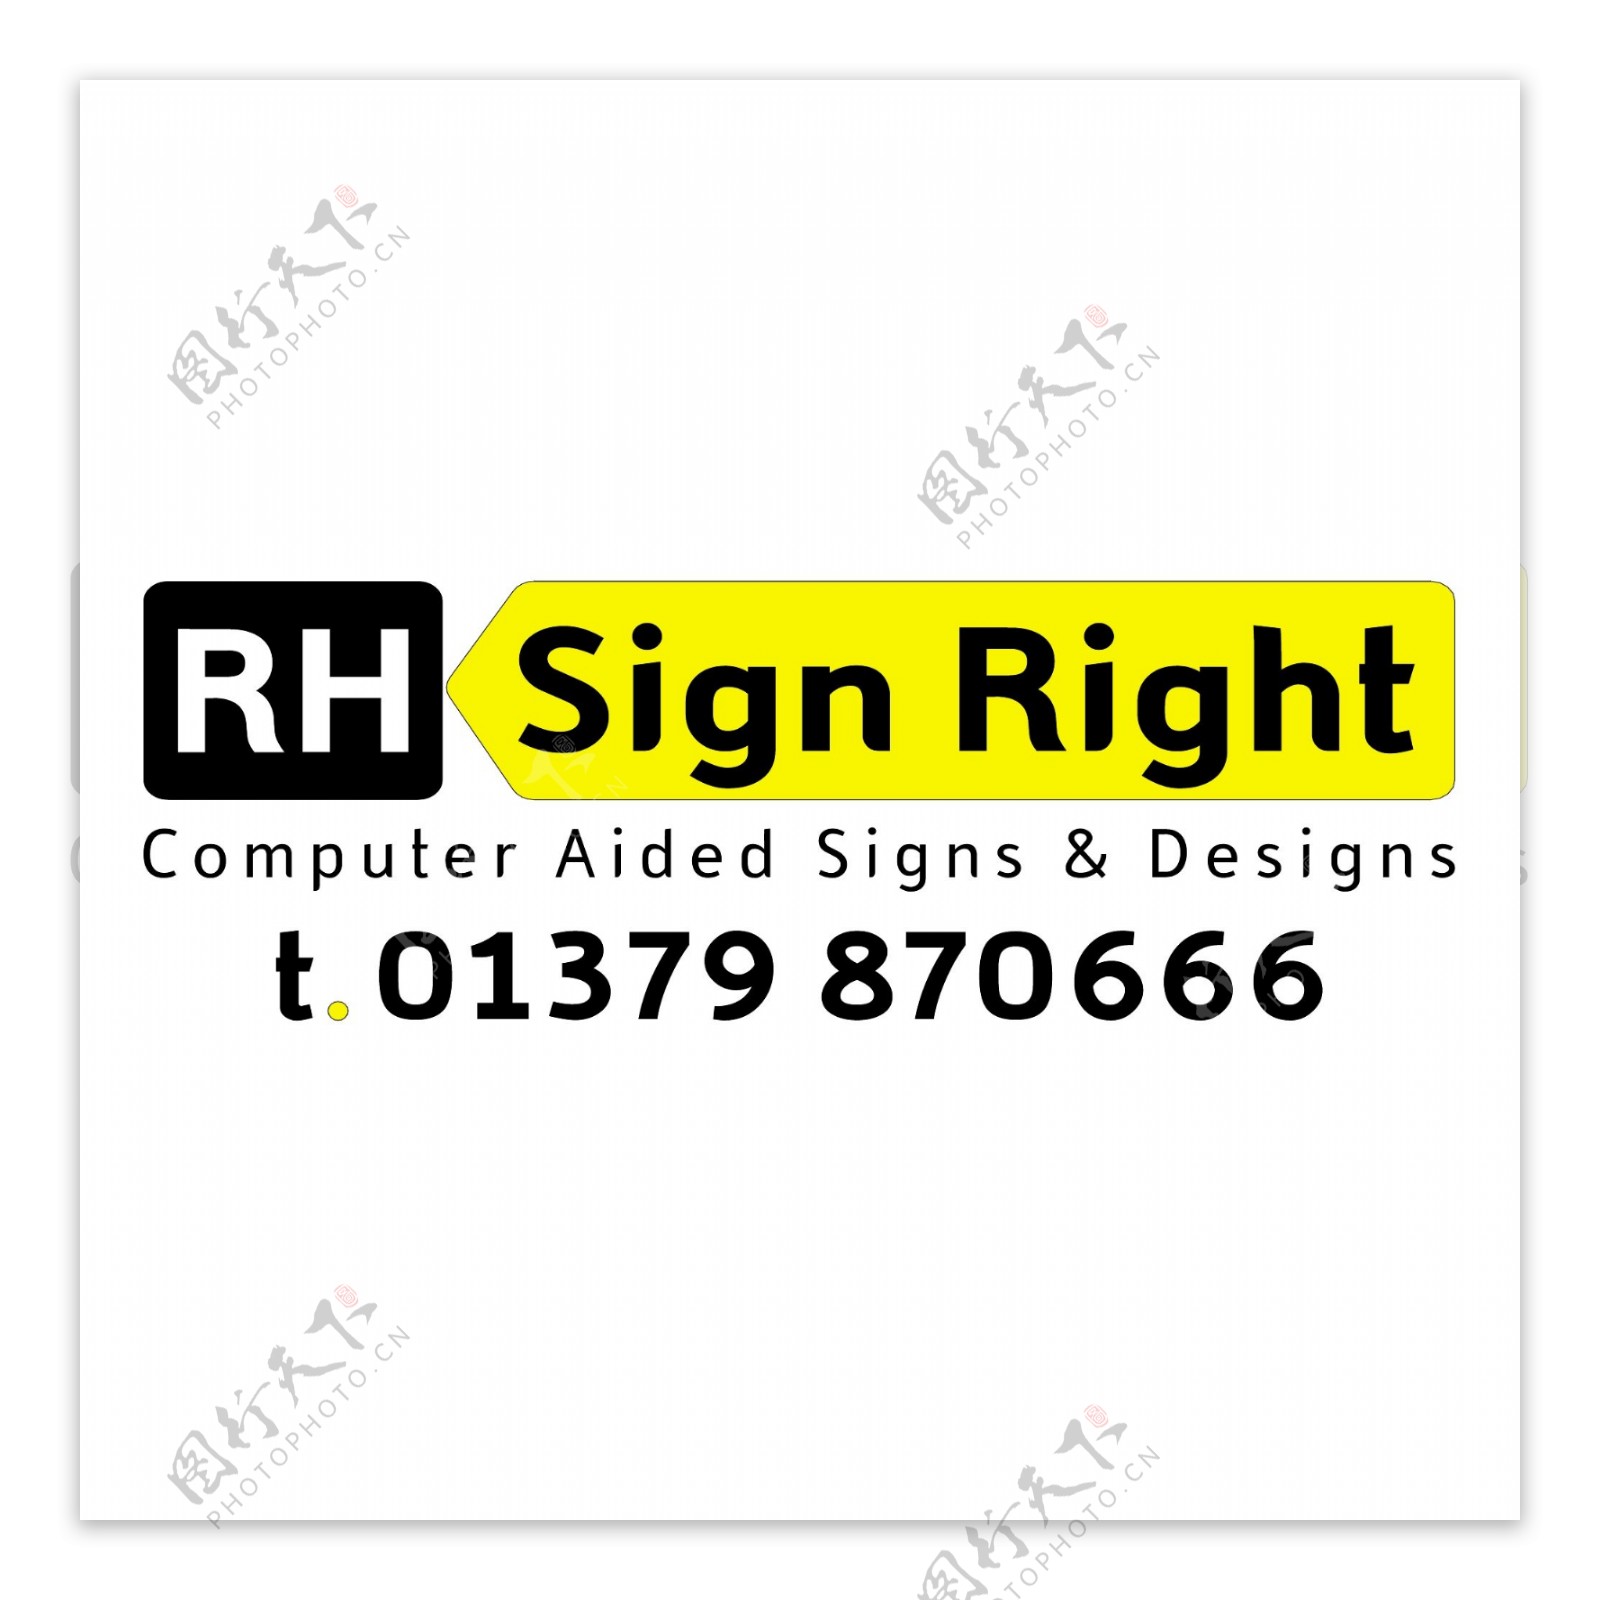 RH签名权